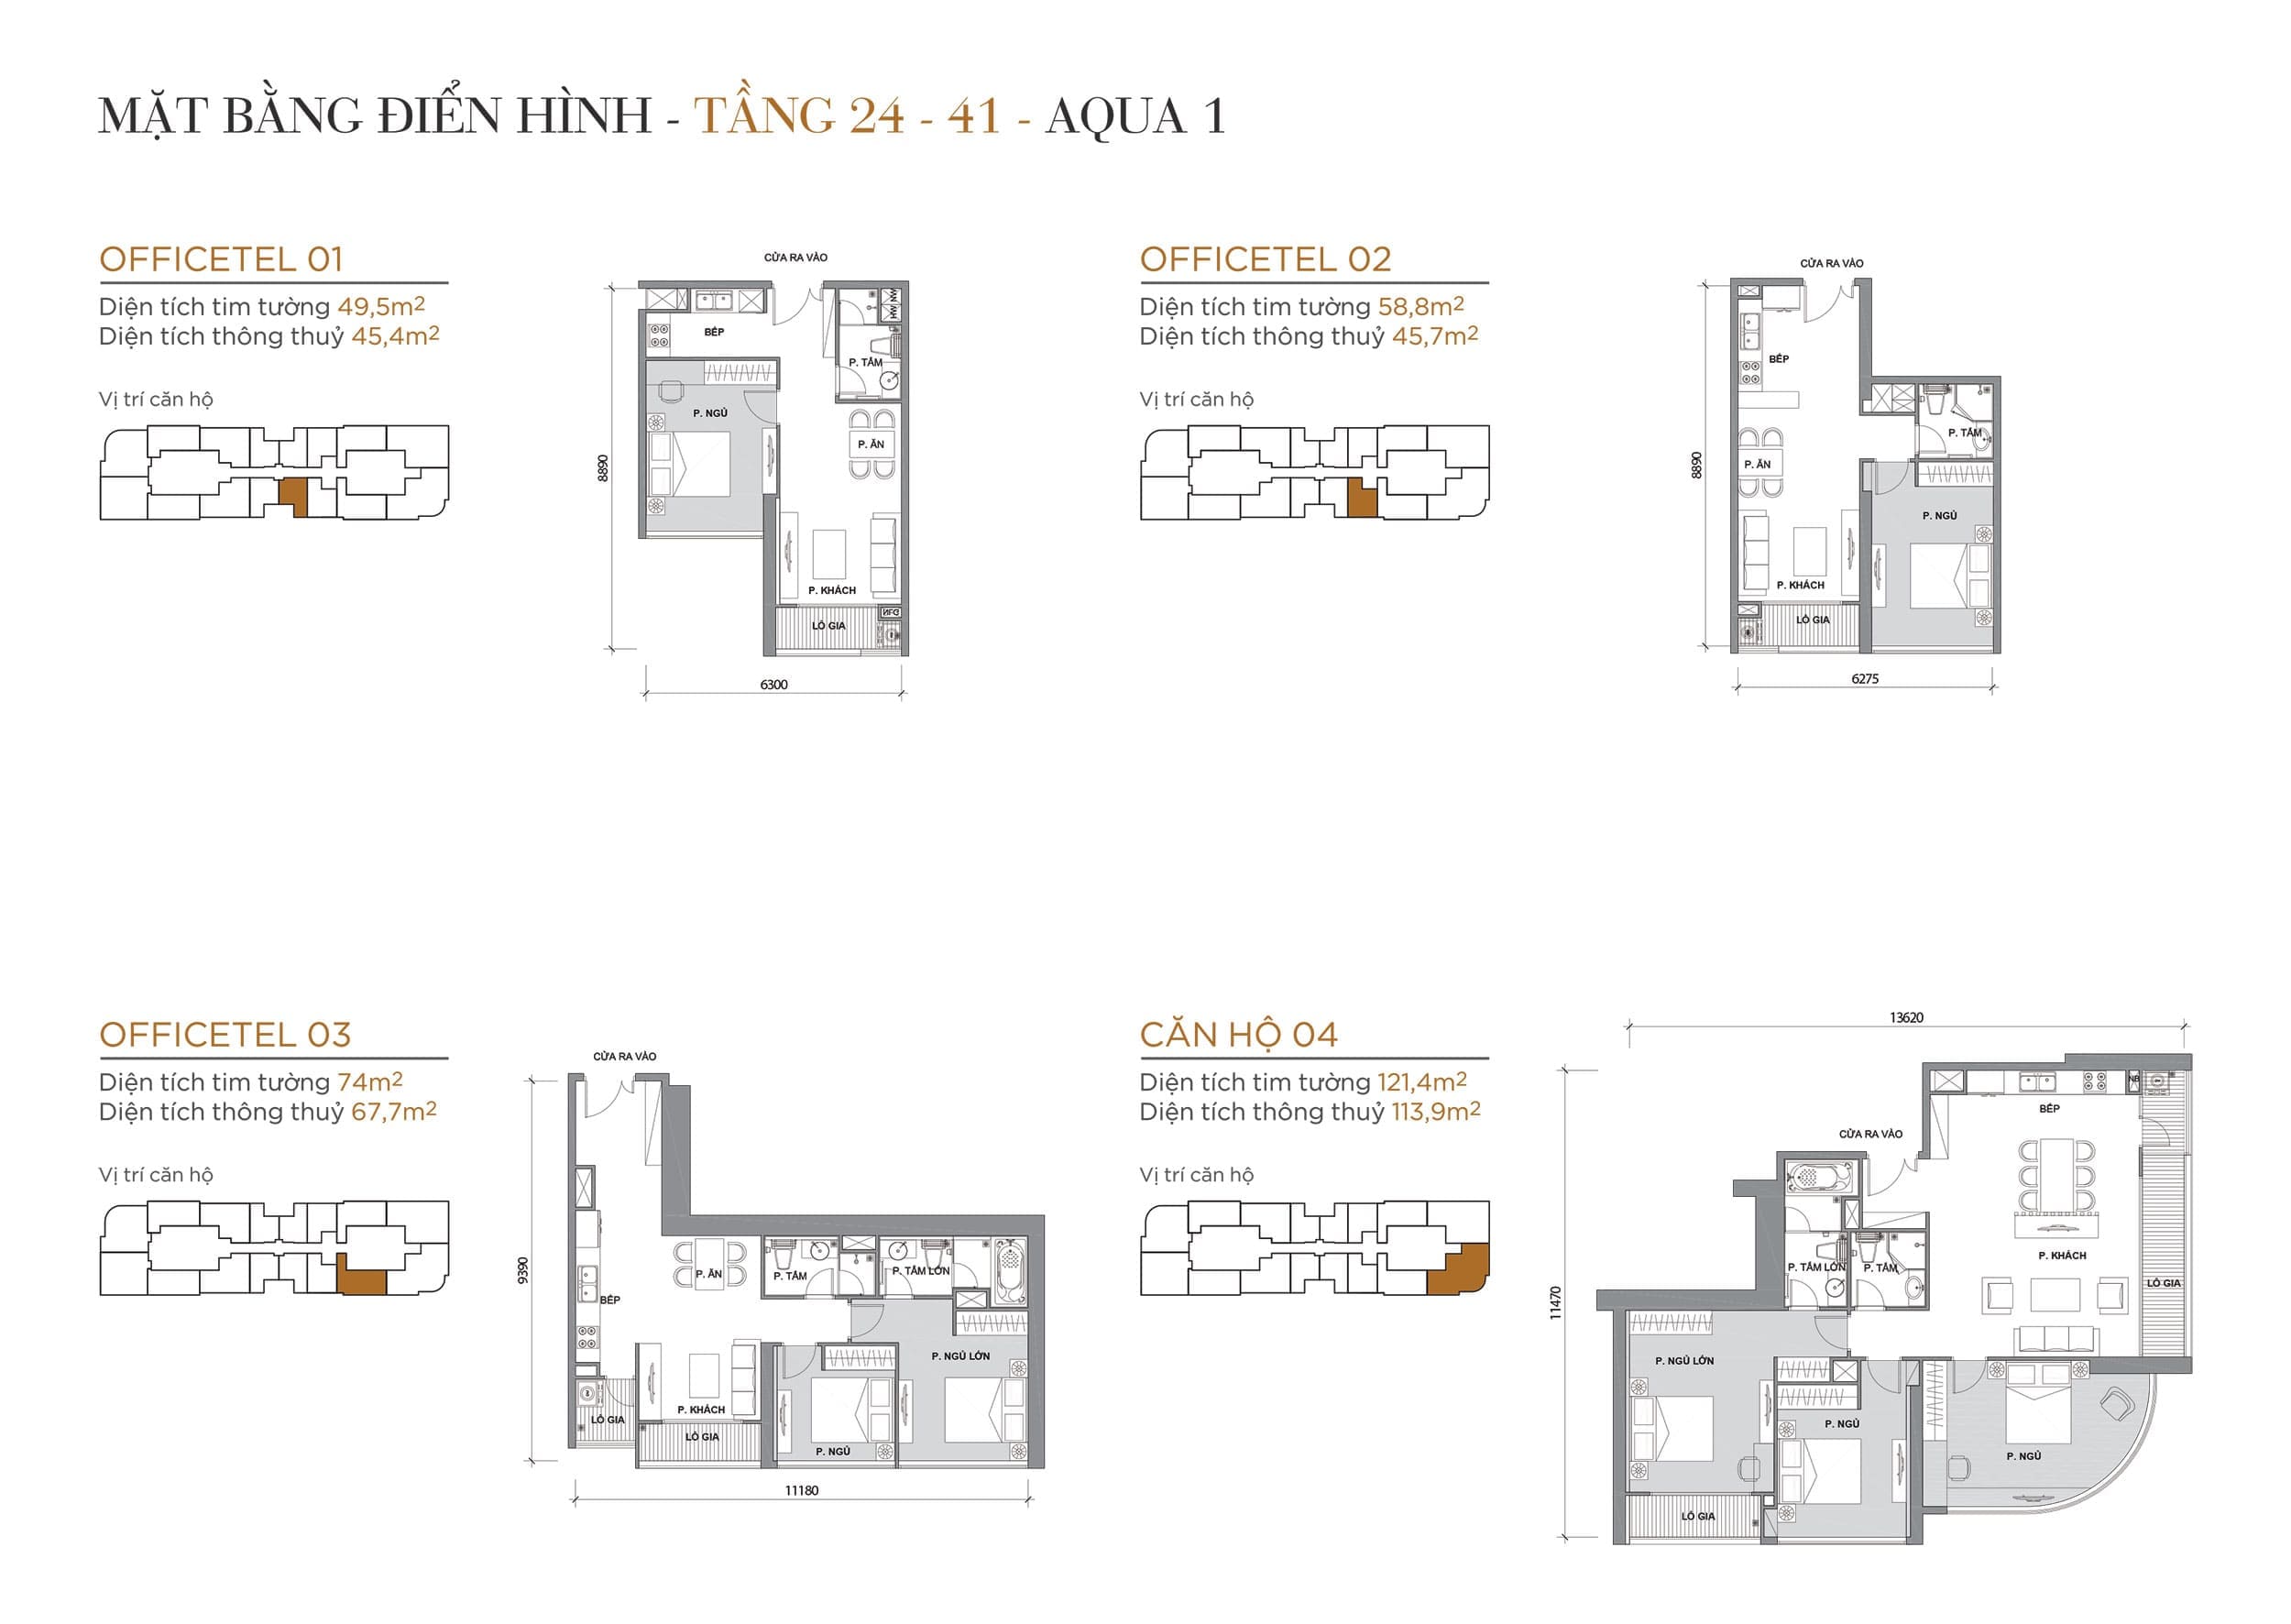 Layout căn hộ tầng 24 đến tầng 41 tòa Aqua 1 loại Officetel 01, Officetel 02, Officetel 03, Căn hộ 04.